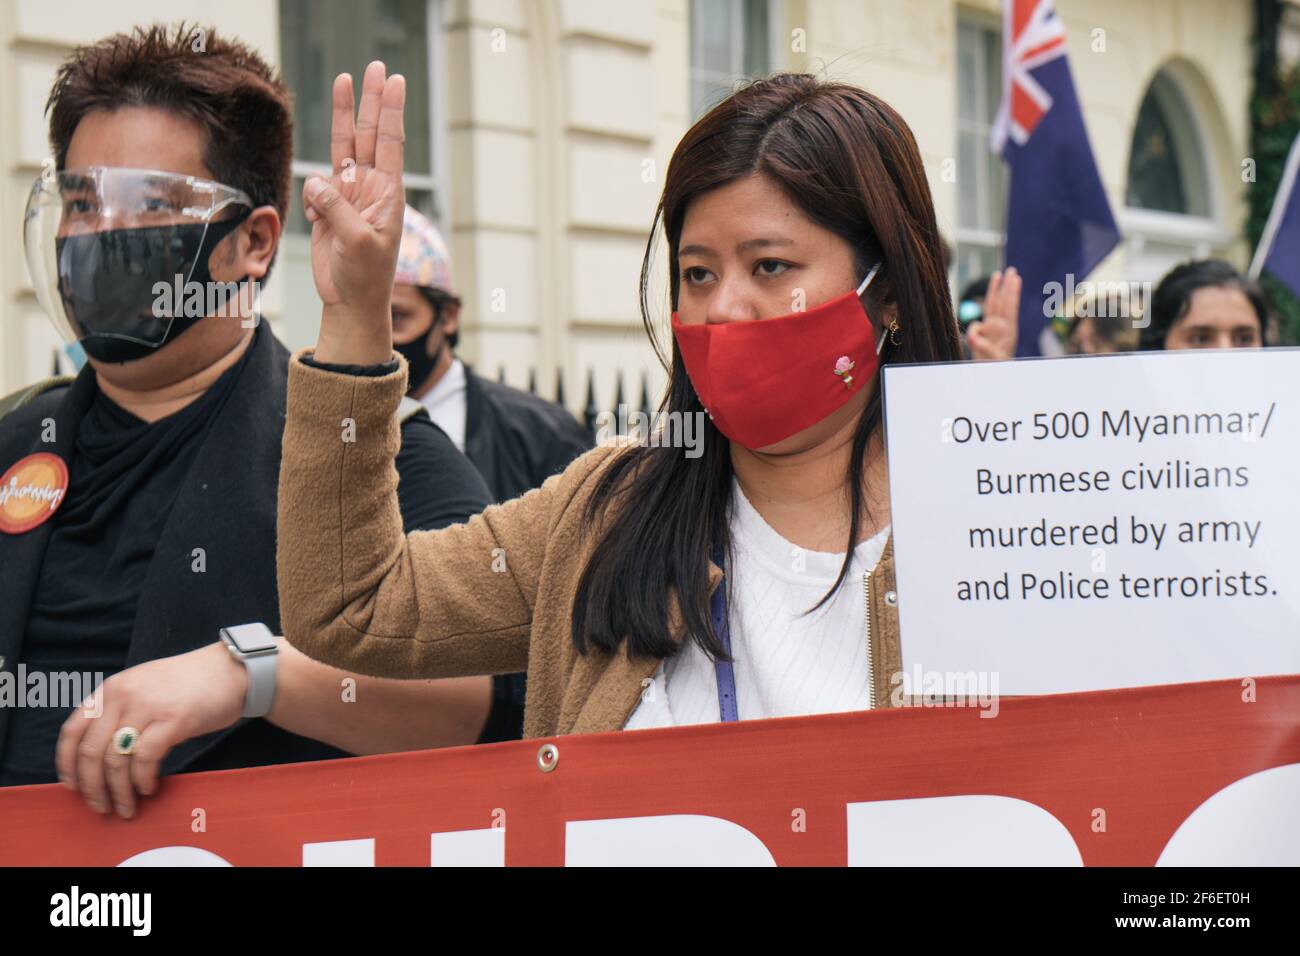 Londres, Royaume-Uni. 31 mars 2021. Protestation contre la violence militaire au Myanmar. Les manifestants se rassemblent sur la place du Parlement et se marchent à l'ambassade chinoise pour exprimer leur mécontentement à l'égard de l'implication chinoise dans le coup d'Etat militaire et le meurtre de civils innocents, dont des enfants Banque D'Images